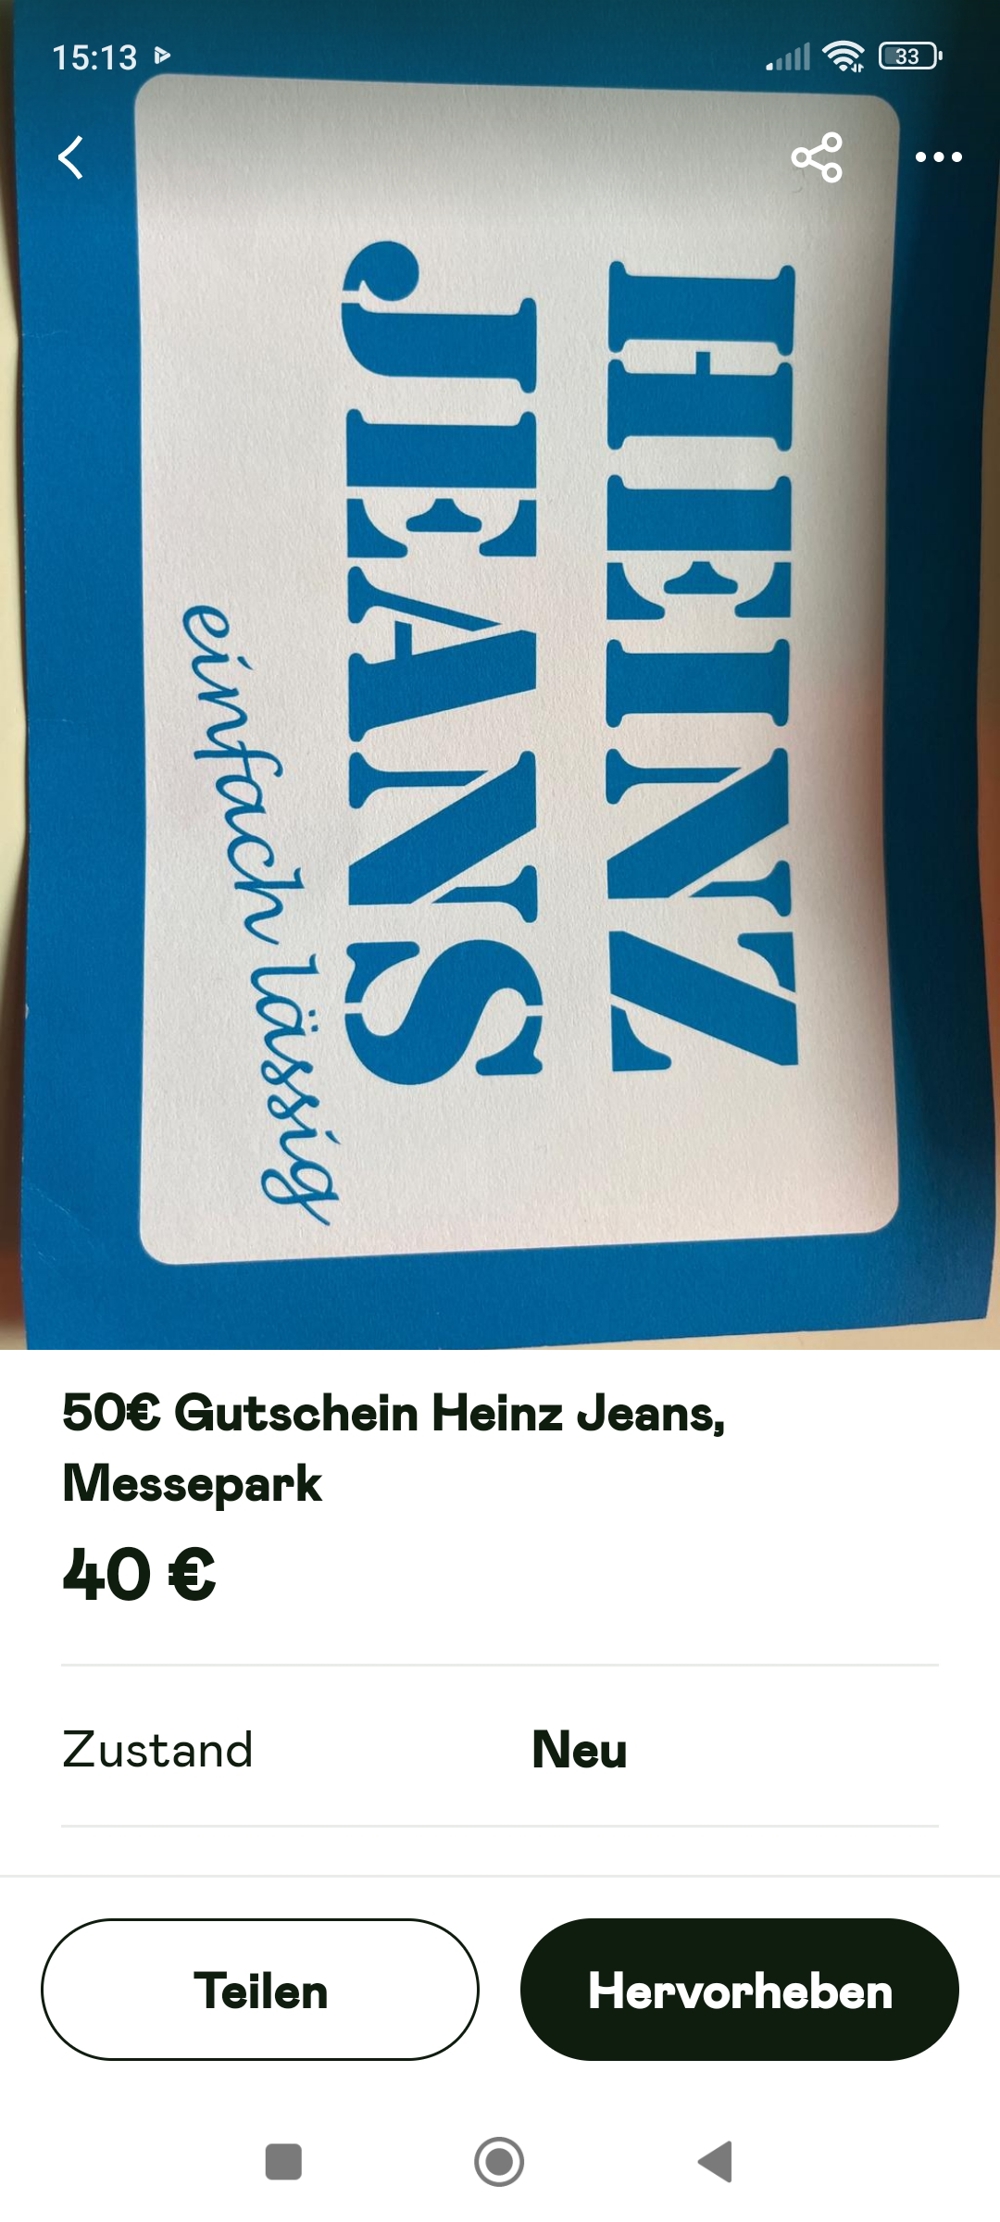 Gutschein - Heinz Jeans